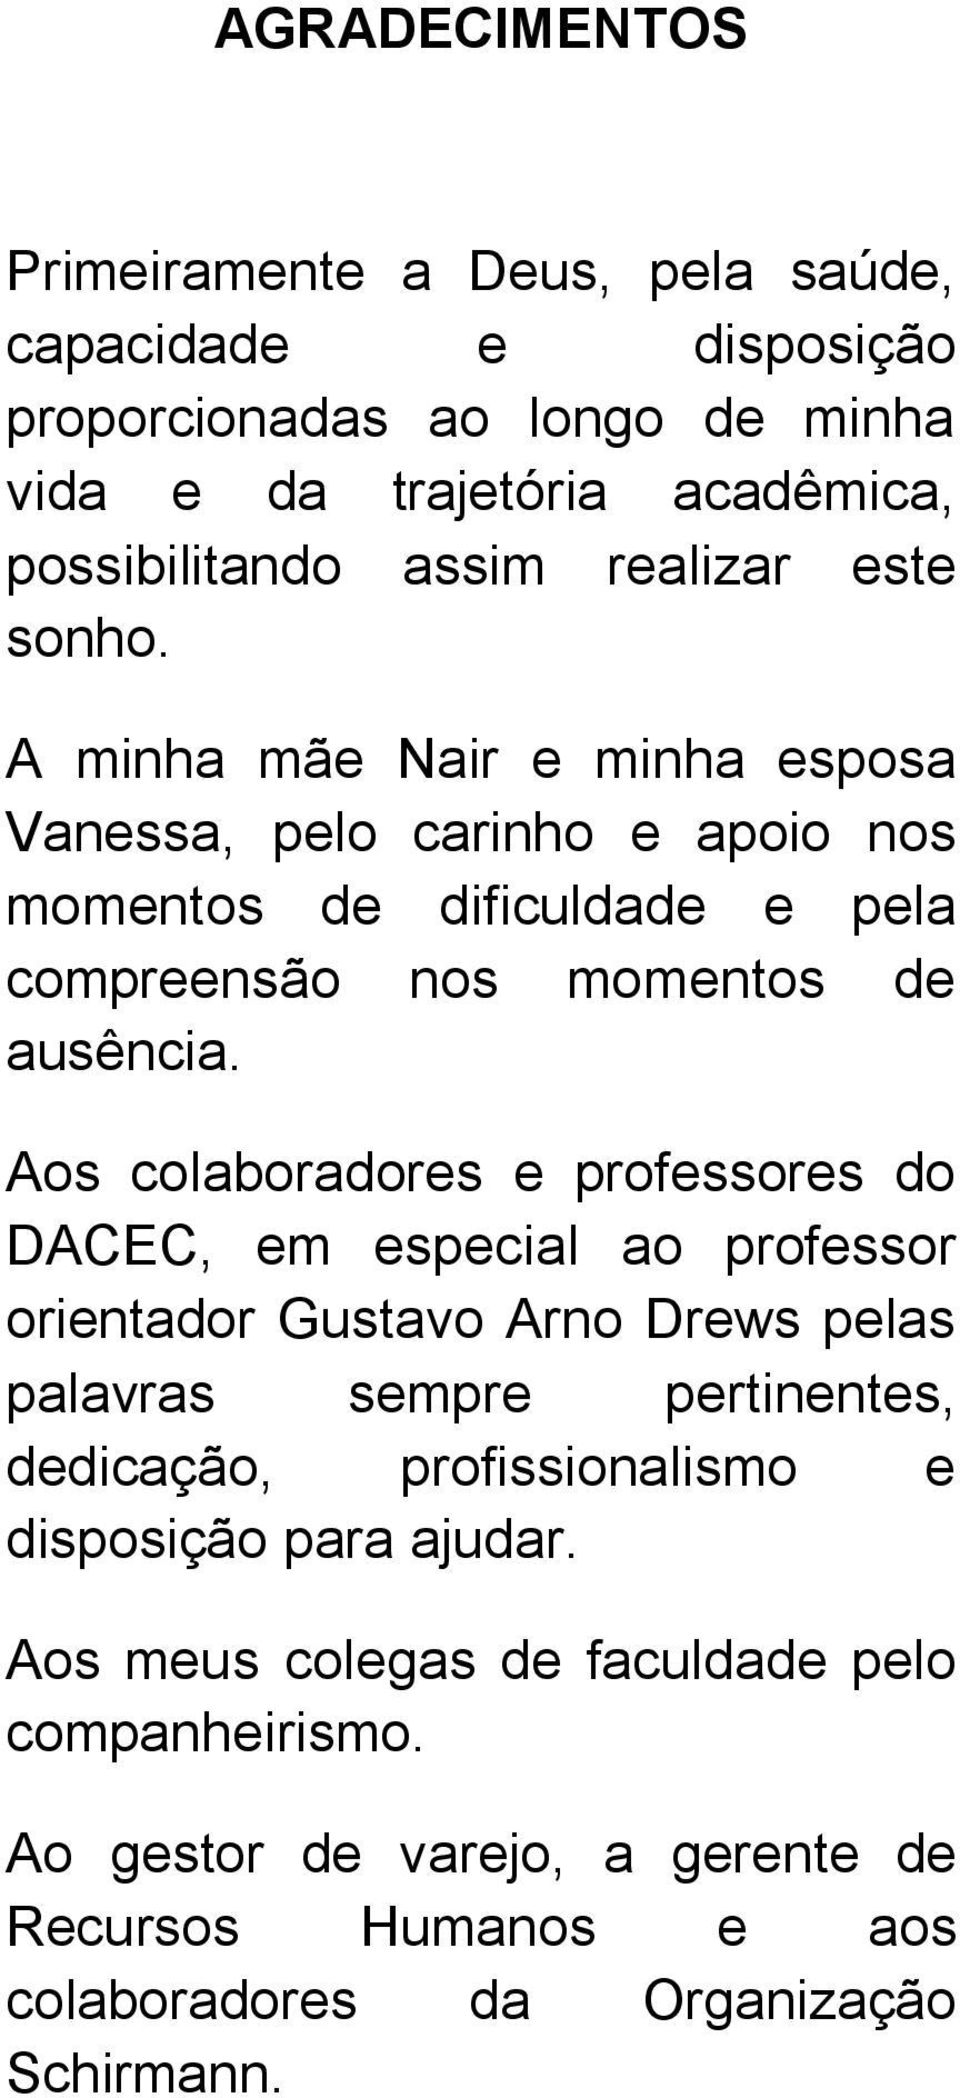 Aos colaboradores e professores do DACEC, em especial ao professor orientador Gustavo Arno Drews pelas palavras sempre pertinentes, dedicação, profissionalismo e